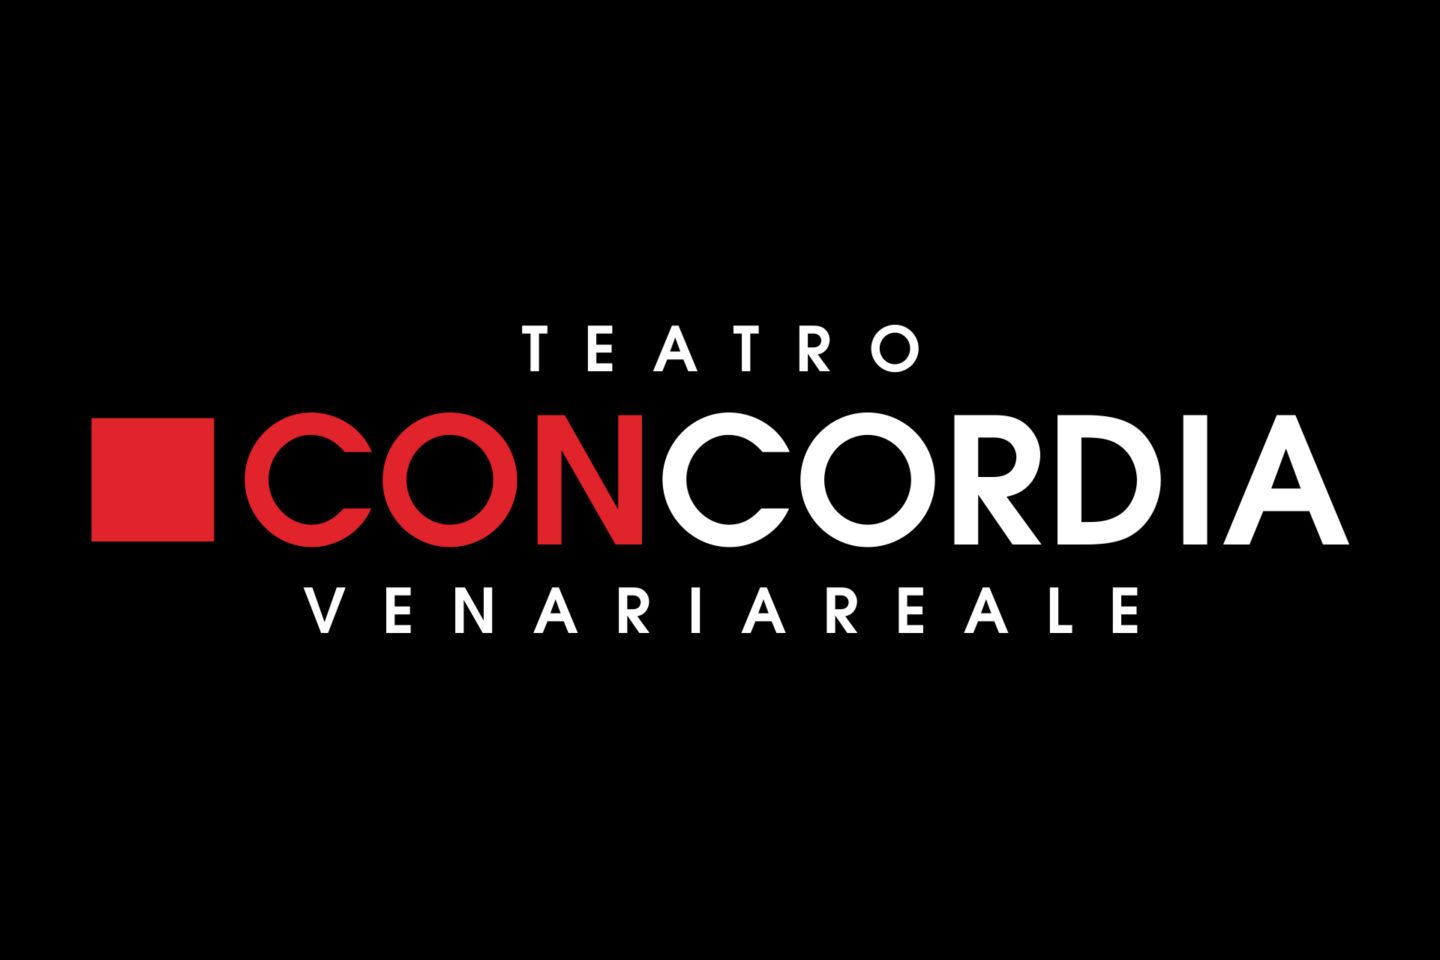 (c) Teatrodellaconcordia.it